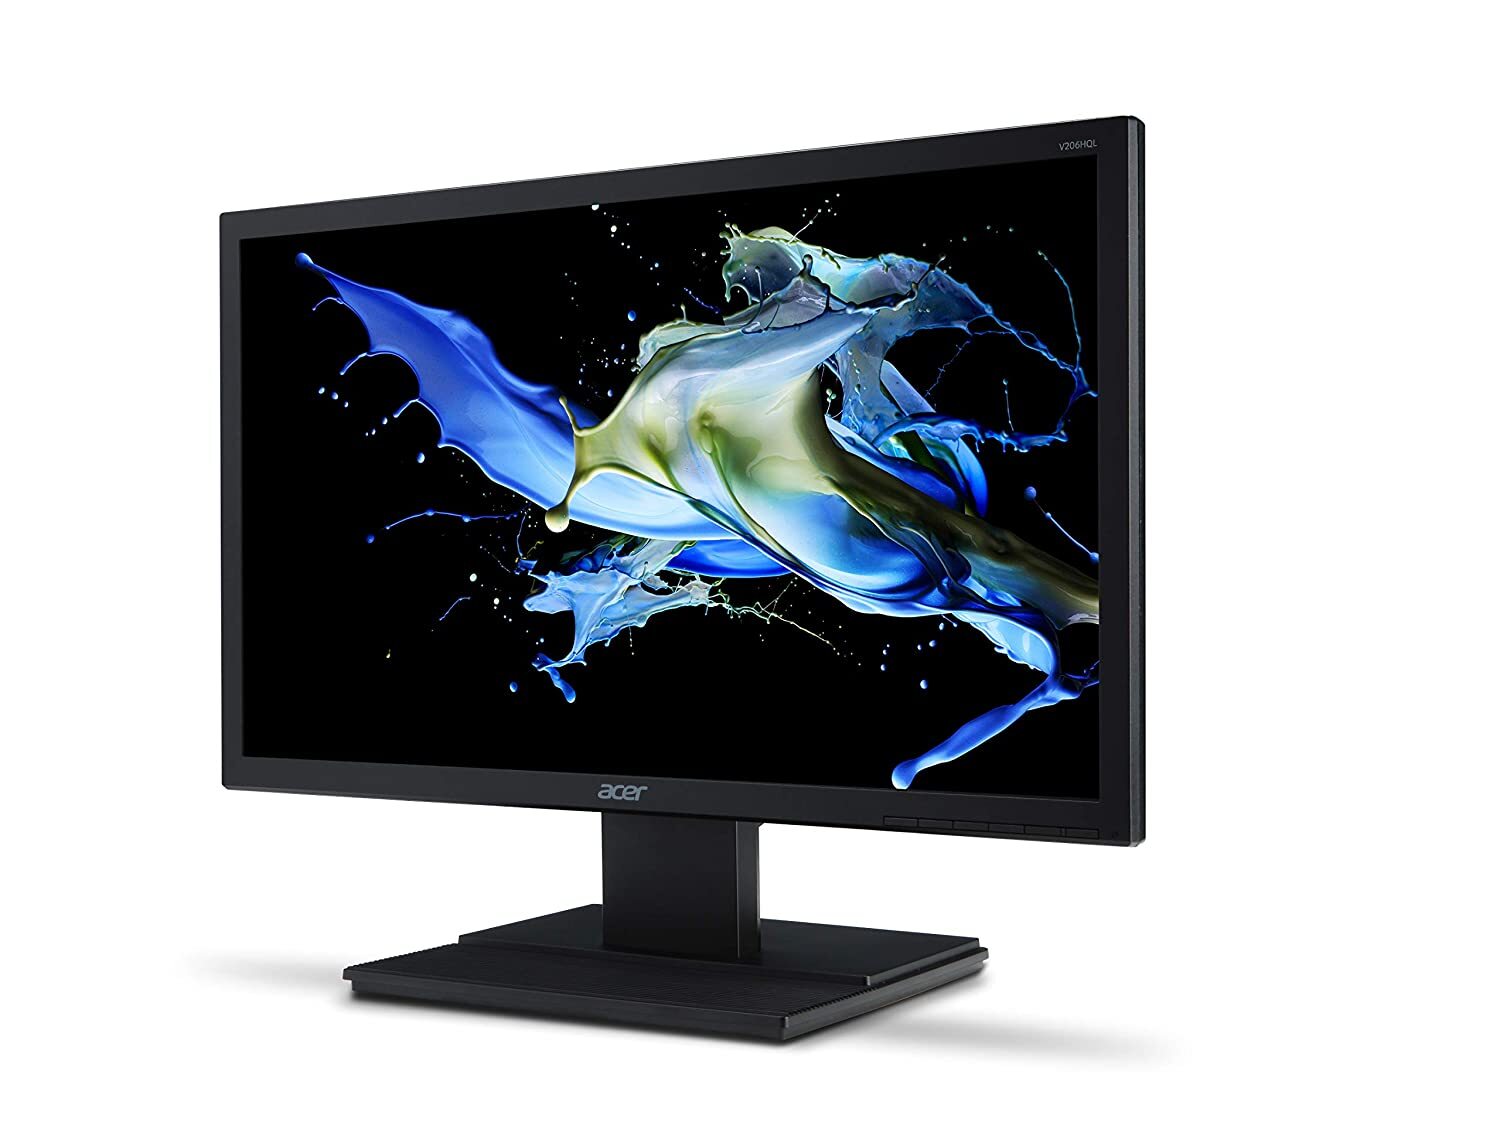 Acer V206HQL 19.5-inch LED Backlit Computer Monitor